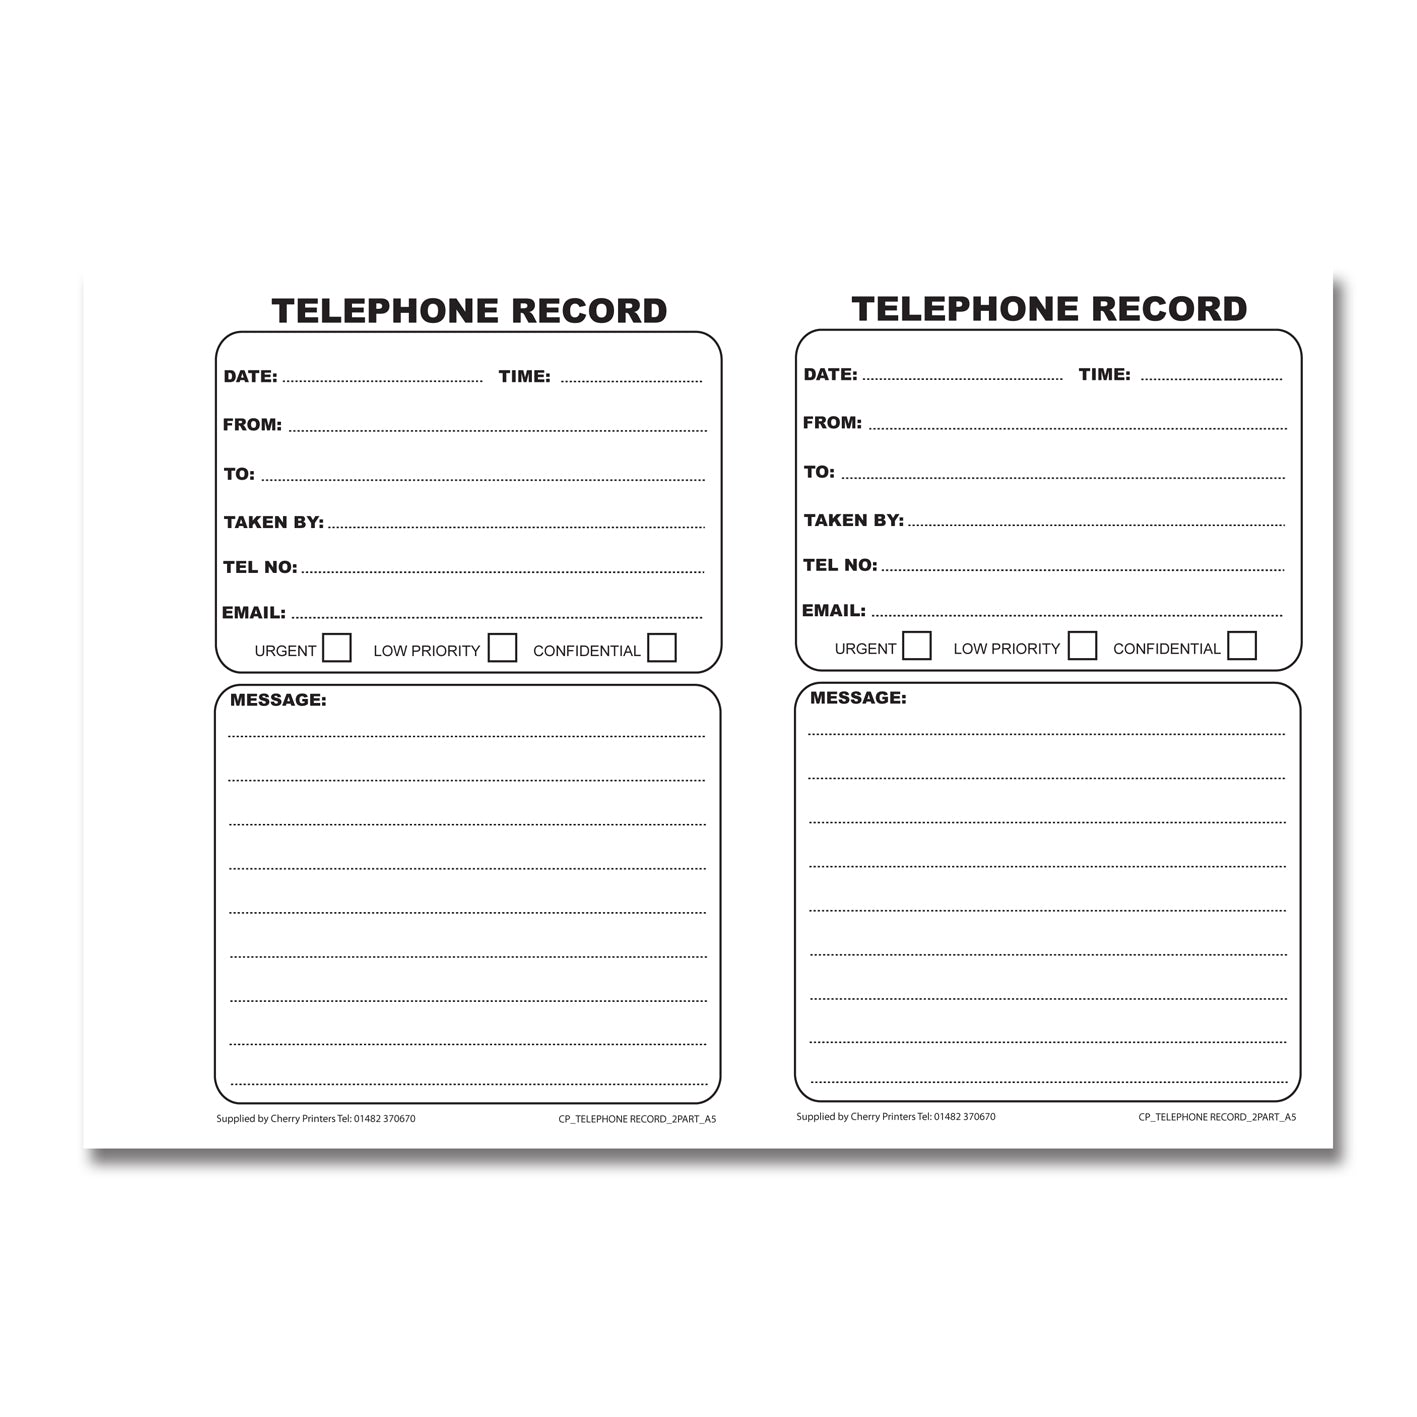 NCR Telefon-Doppelbuch A5 50 Sätze 100 Datensätze